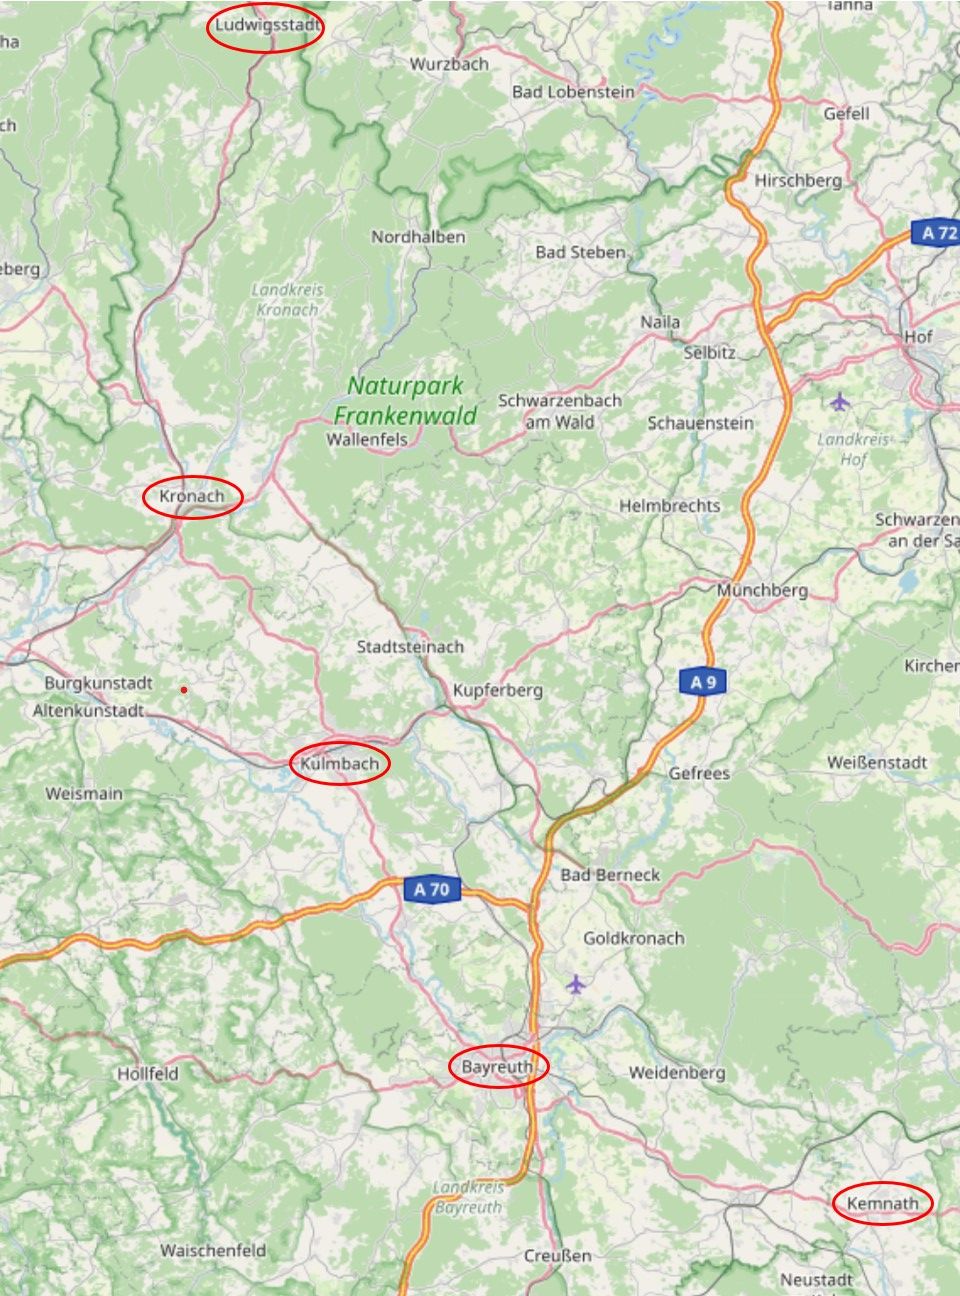 Eine Landkarte, auf der die Orte Kemnath, Bayreuth, Kulmbach, Kronach und Ludwigsstadt markiert sind. Sie liegen auf einer leichten Kurve, die fast genau von Süden nach Norden zeigt.